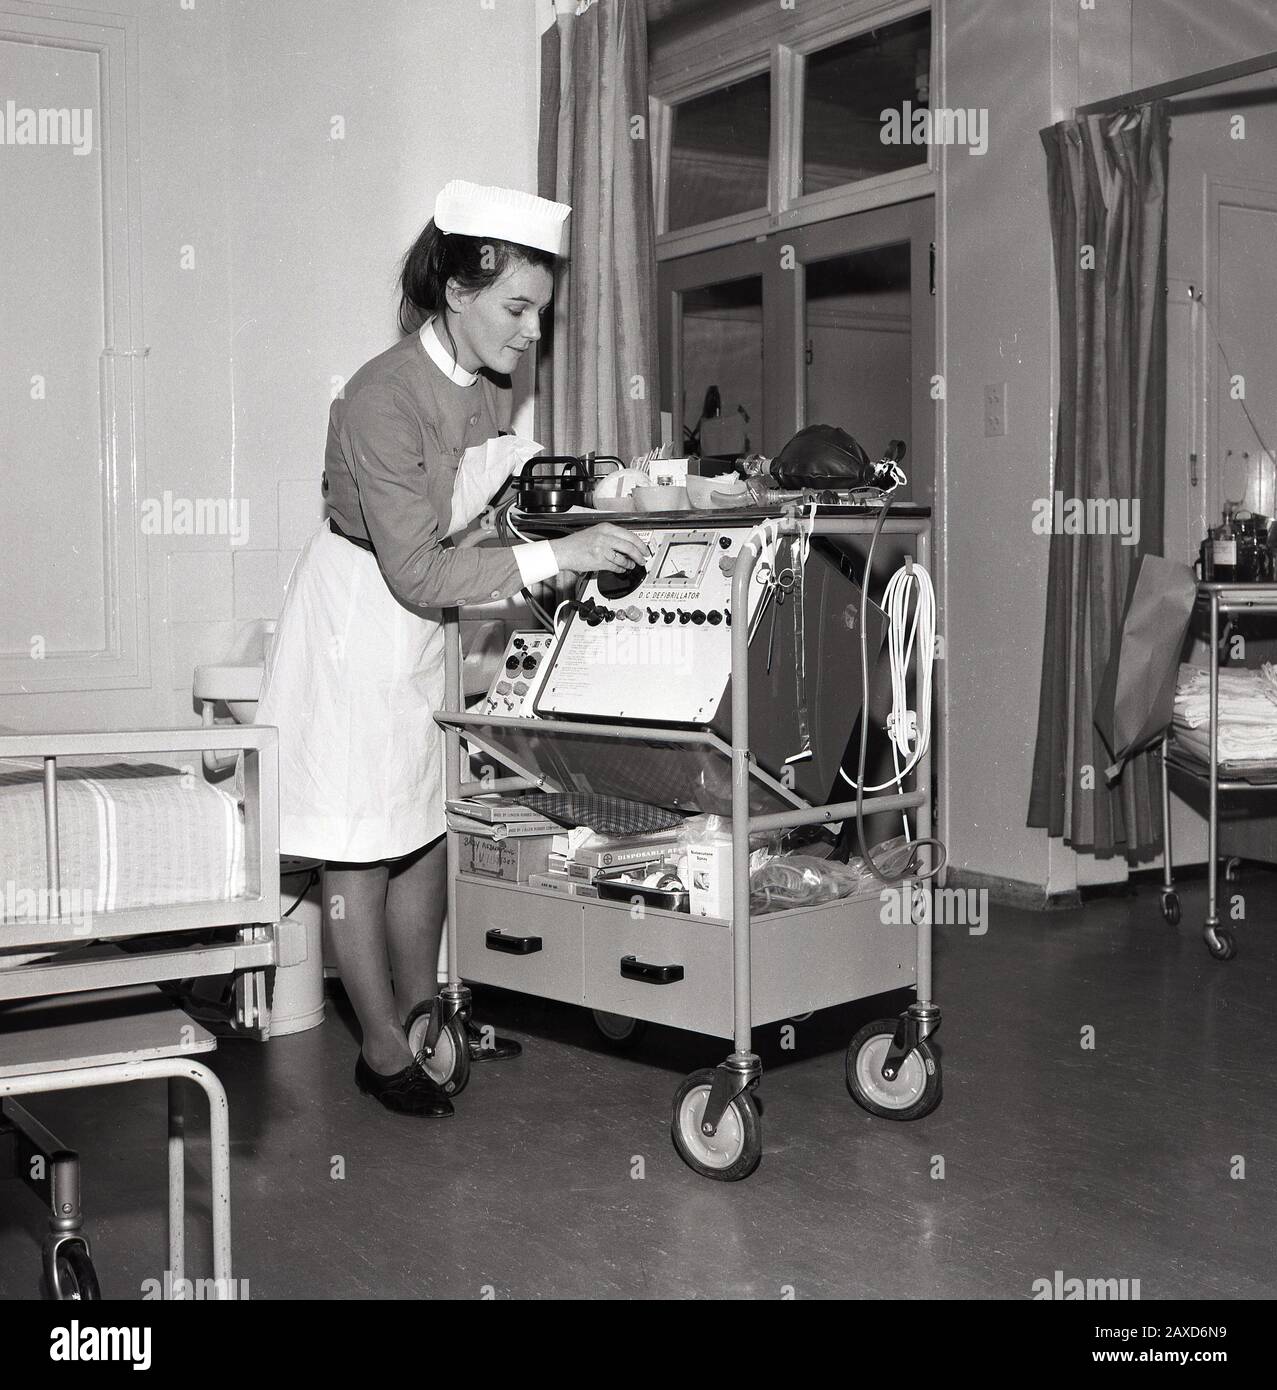 Années 1960, historique, infirmière dans un service hospitalier avec un chariot avec un défibrillateur DC, un dispositif électronique qui est utilisé pour ranimer le cœur d'un patient après une urgence cardiaque, South London, Angleterre, Royaume-Uni. Banque D'Images